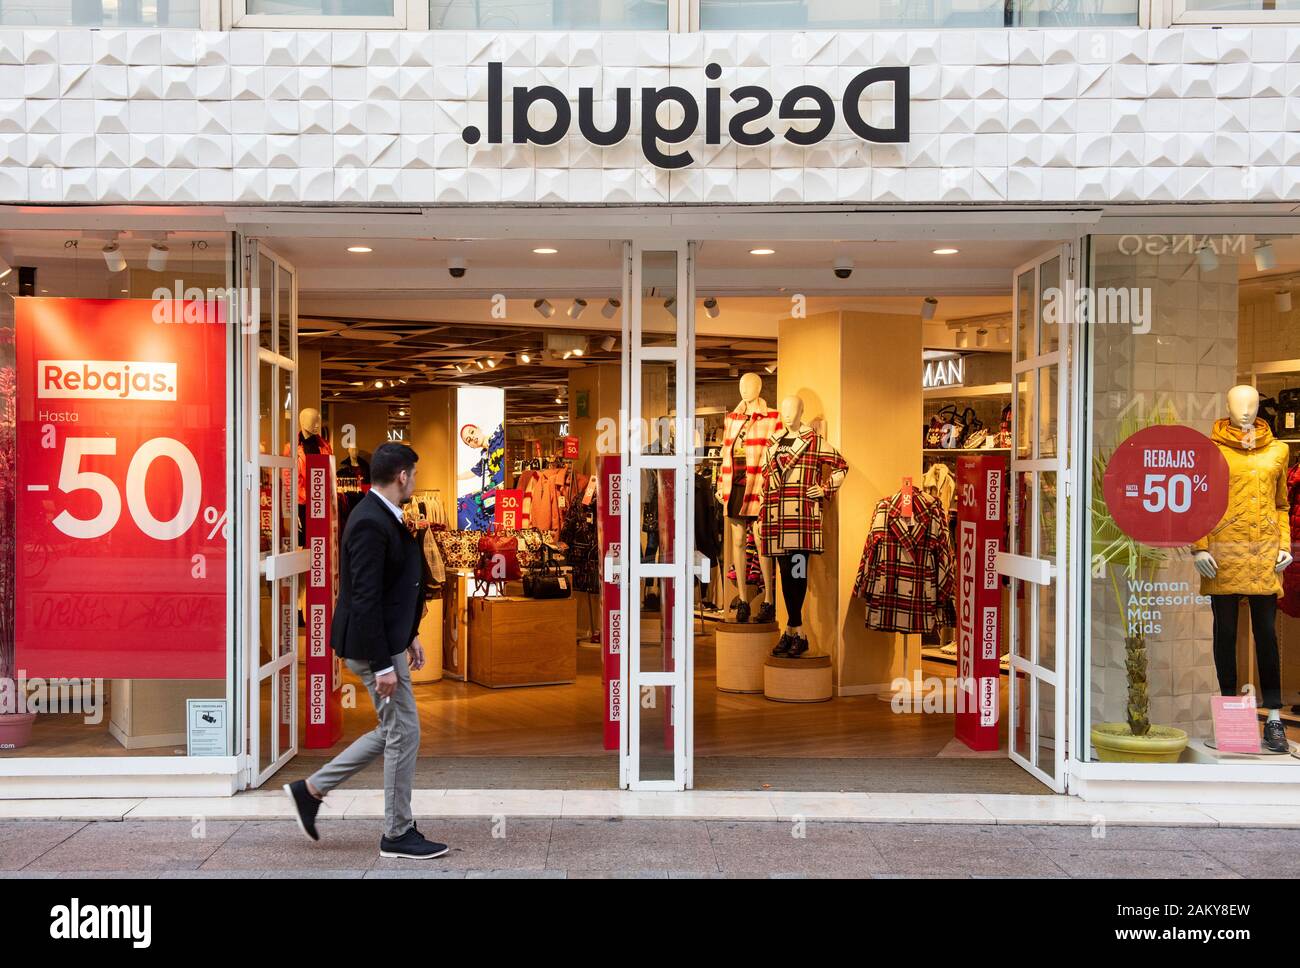 Marque de vêtements espagnole Desigual magasin en Espagne Photo Stock -  Alamy